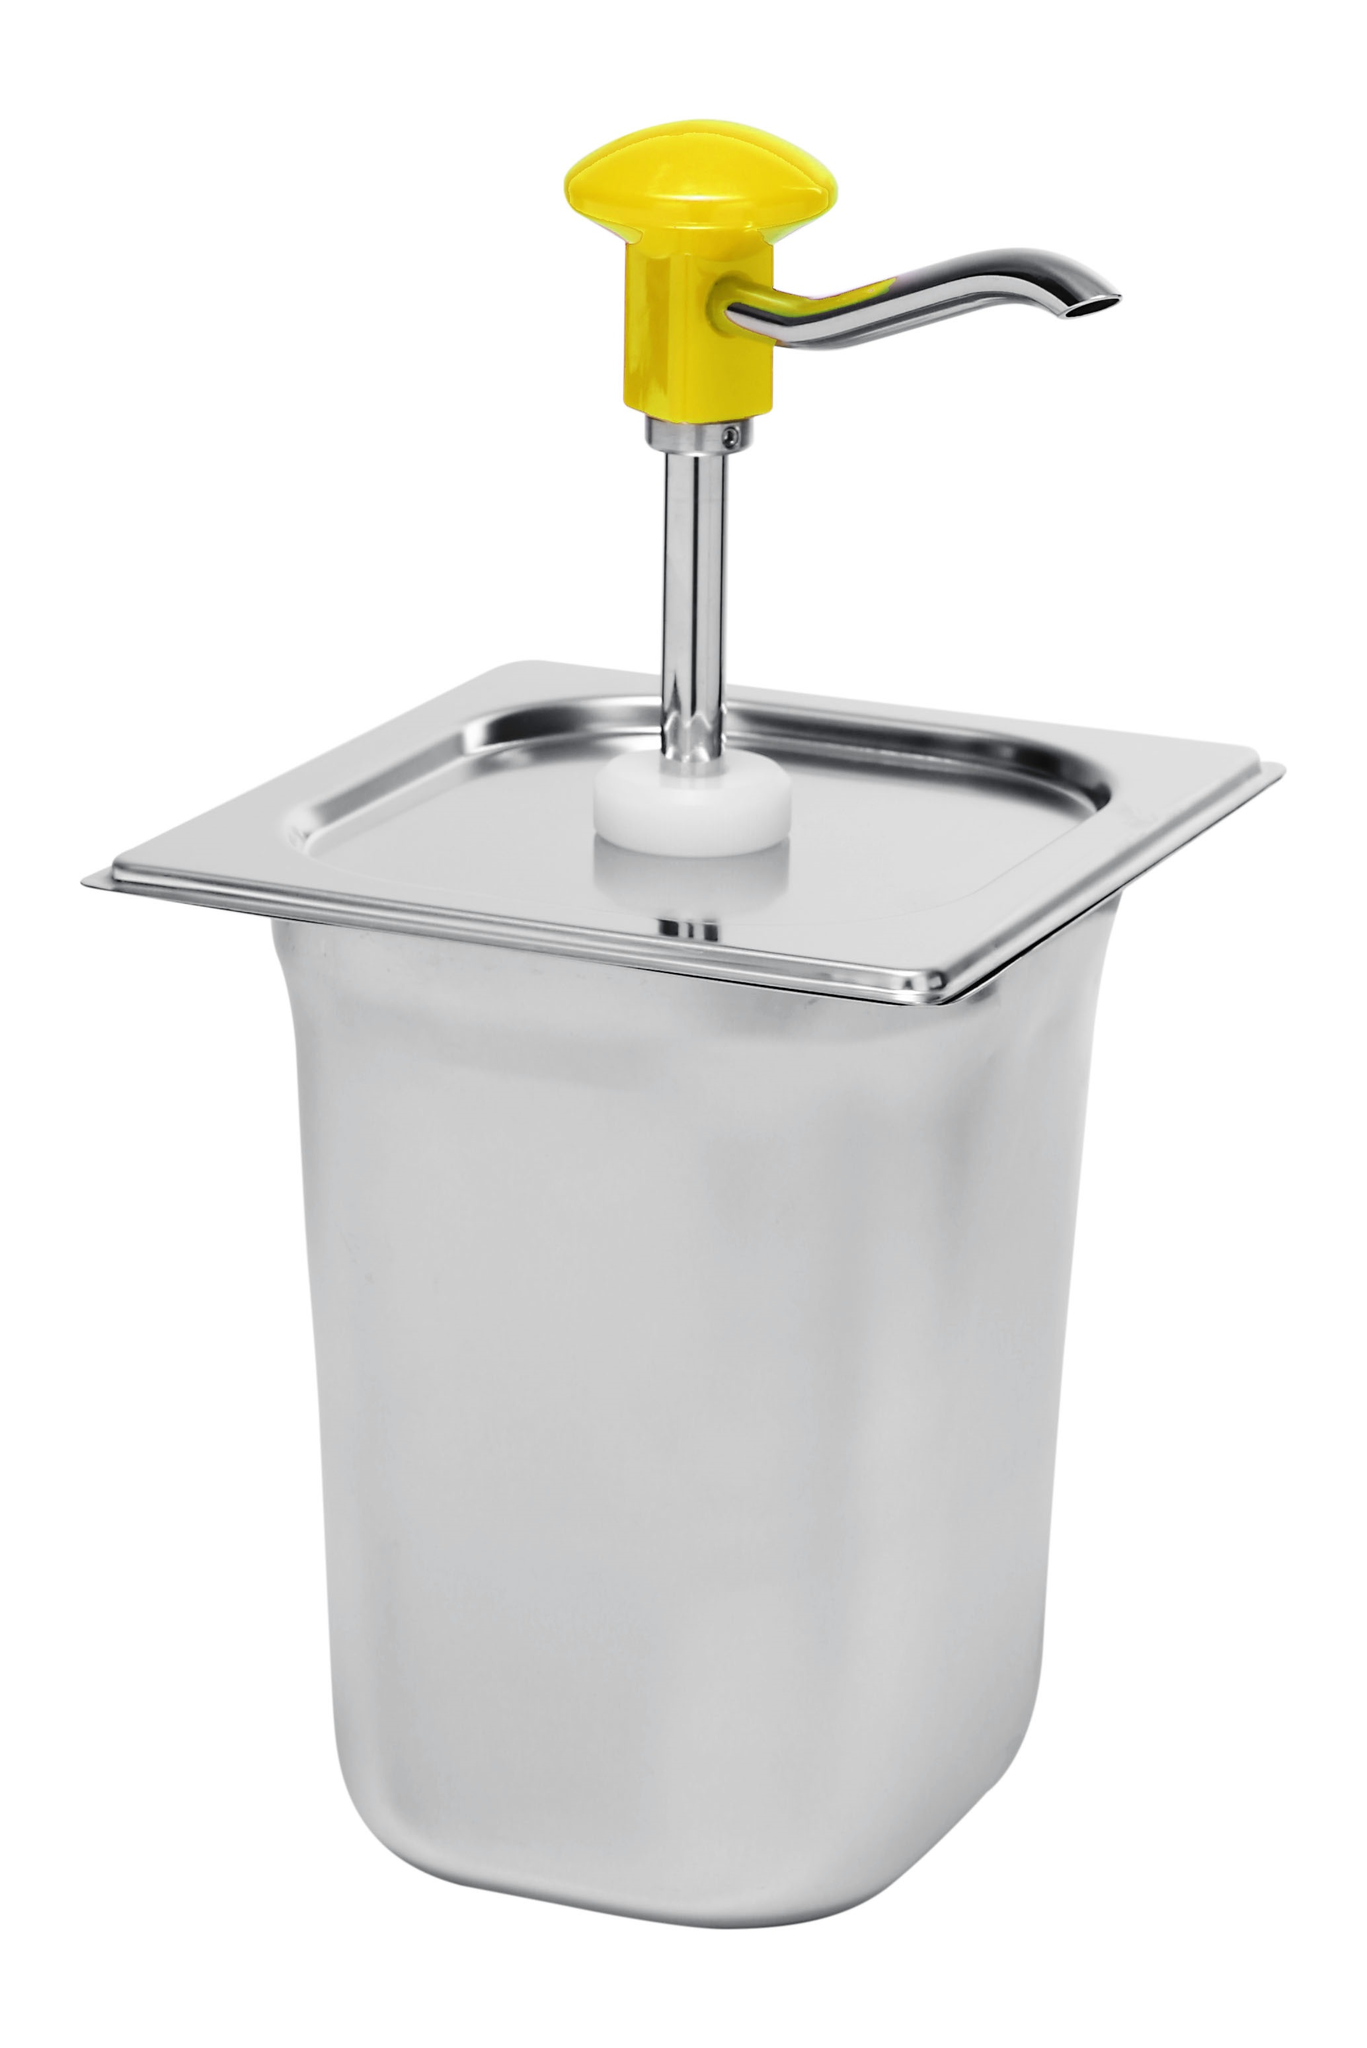 Soßenspender 3 Liter | Gelbe Druckknopfsteuerung | 165(B)x180(T)x320(H)mm